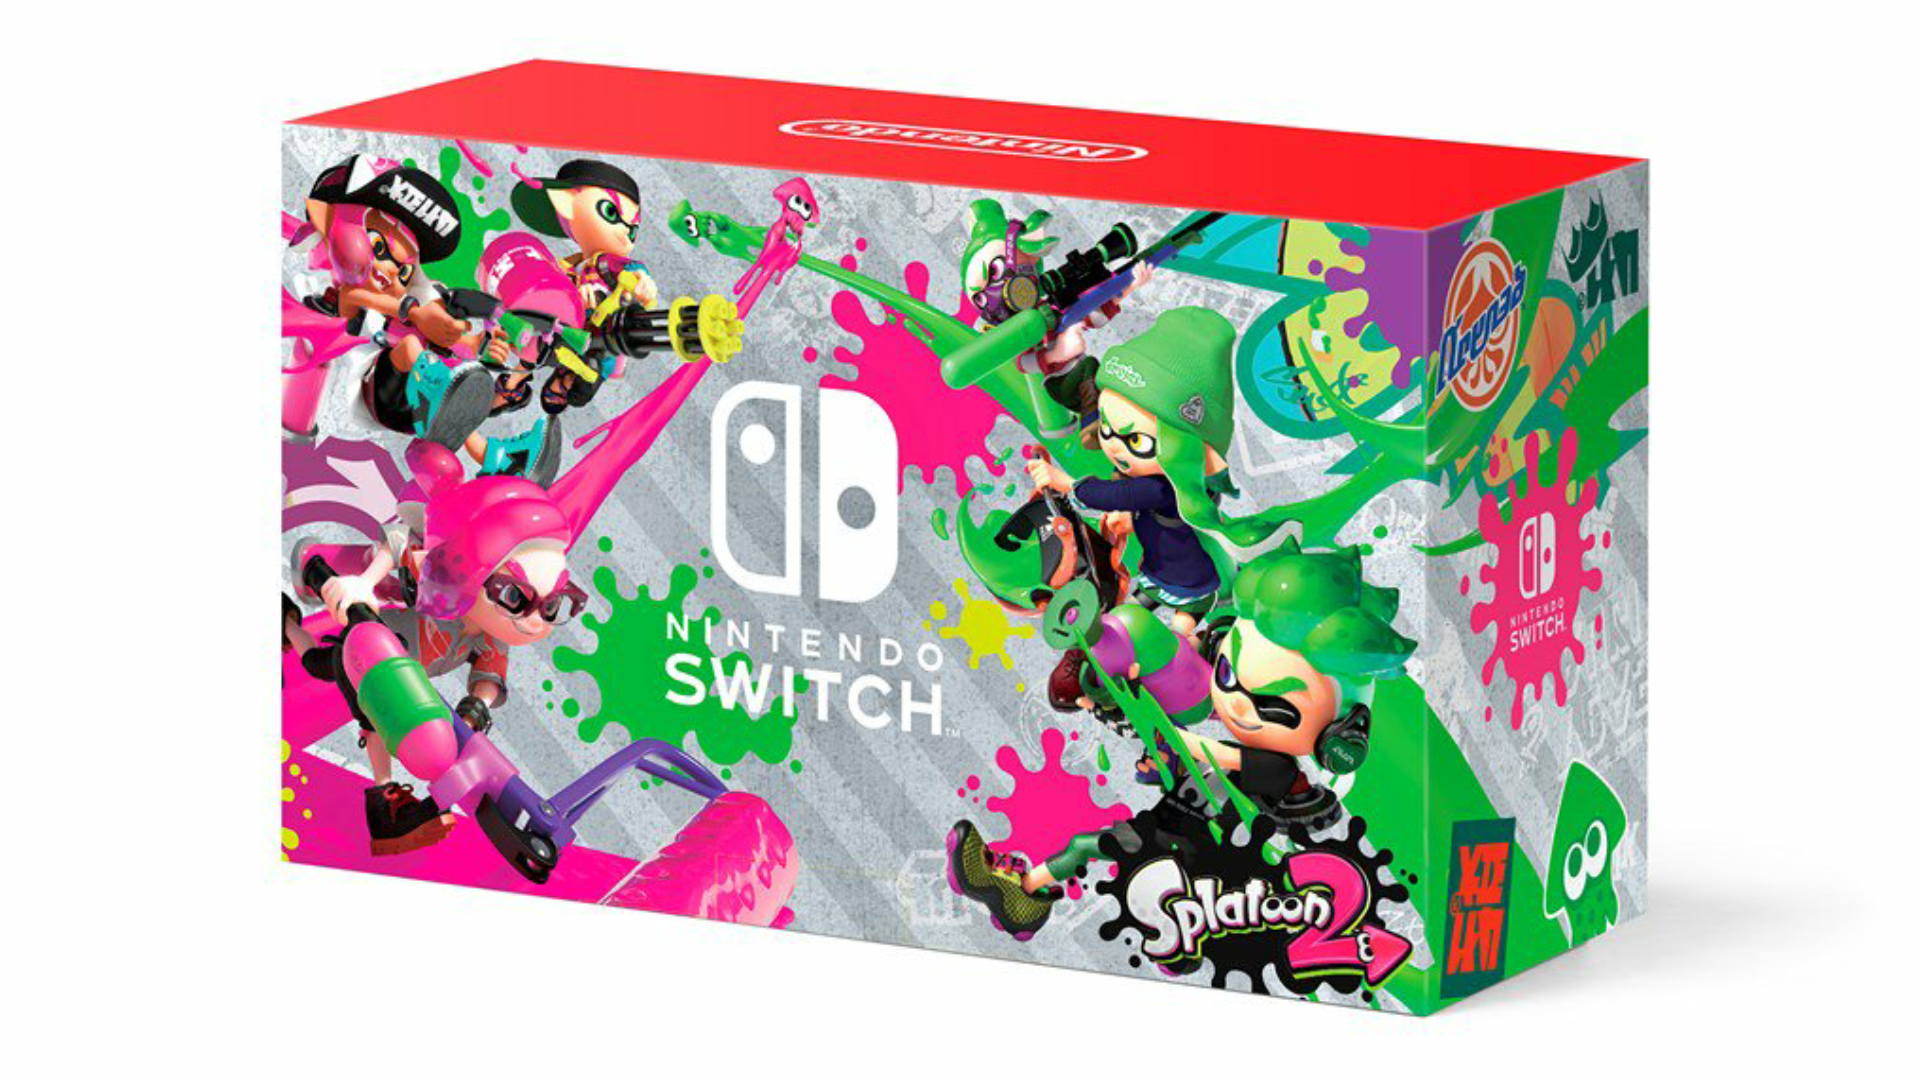 Unboxing del pack de Nintendo Switch con Splatoon 2 exclusivo de Walmart